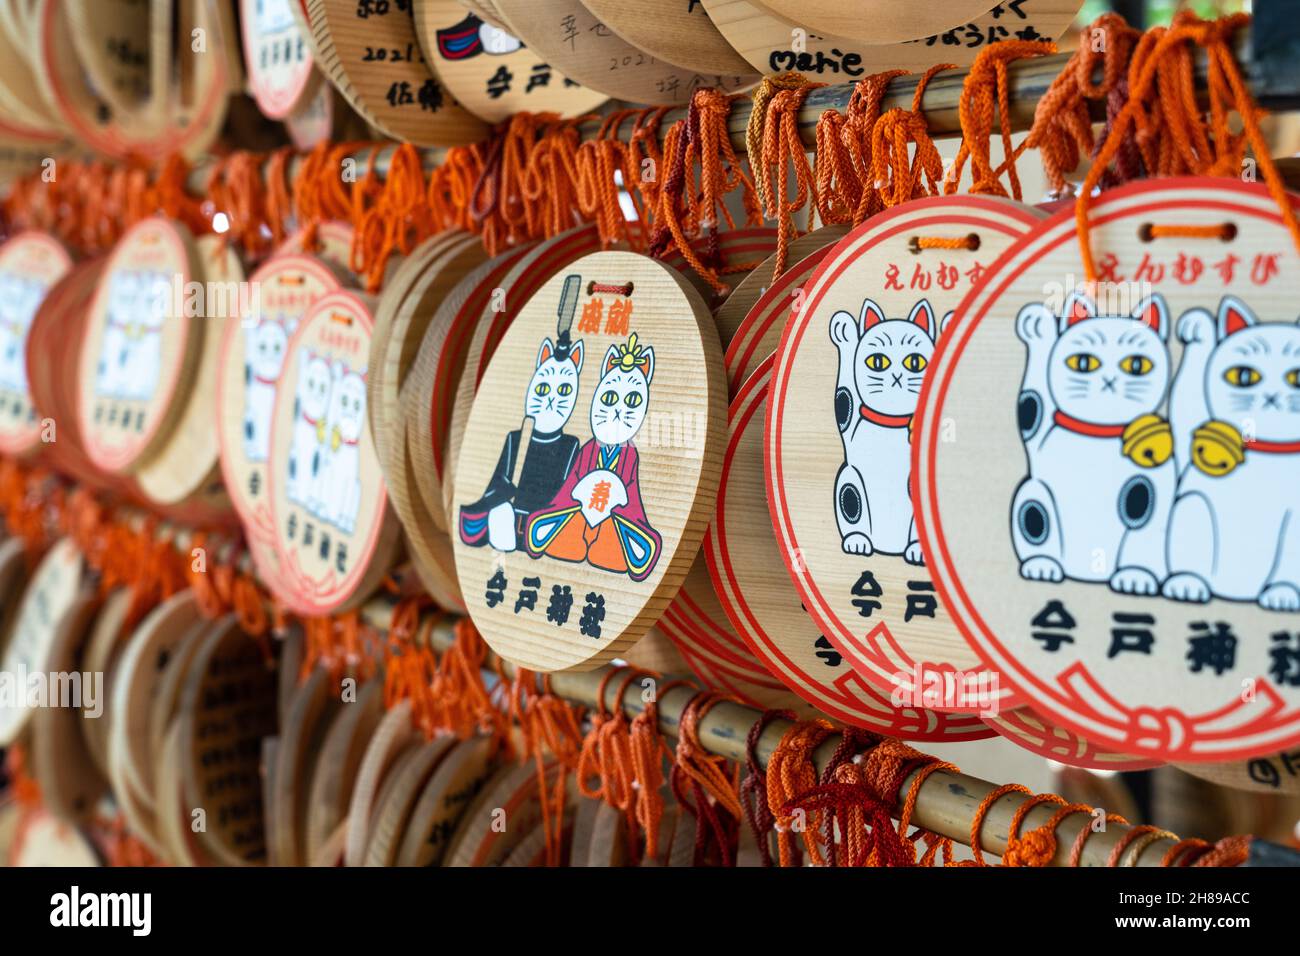 Maneki Neko ou des plaques de prière Lucky Cat ema au sanctuaire Imado Jinja, un temple shinto dédié à la découverte de l'amour à Asakusa, Tokyo, Japon.Les adorateurs accrochent les plaques avec leurs souhaits, leurs rêves ou leurs prières au temple. Banque D'Images